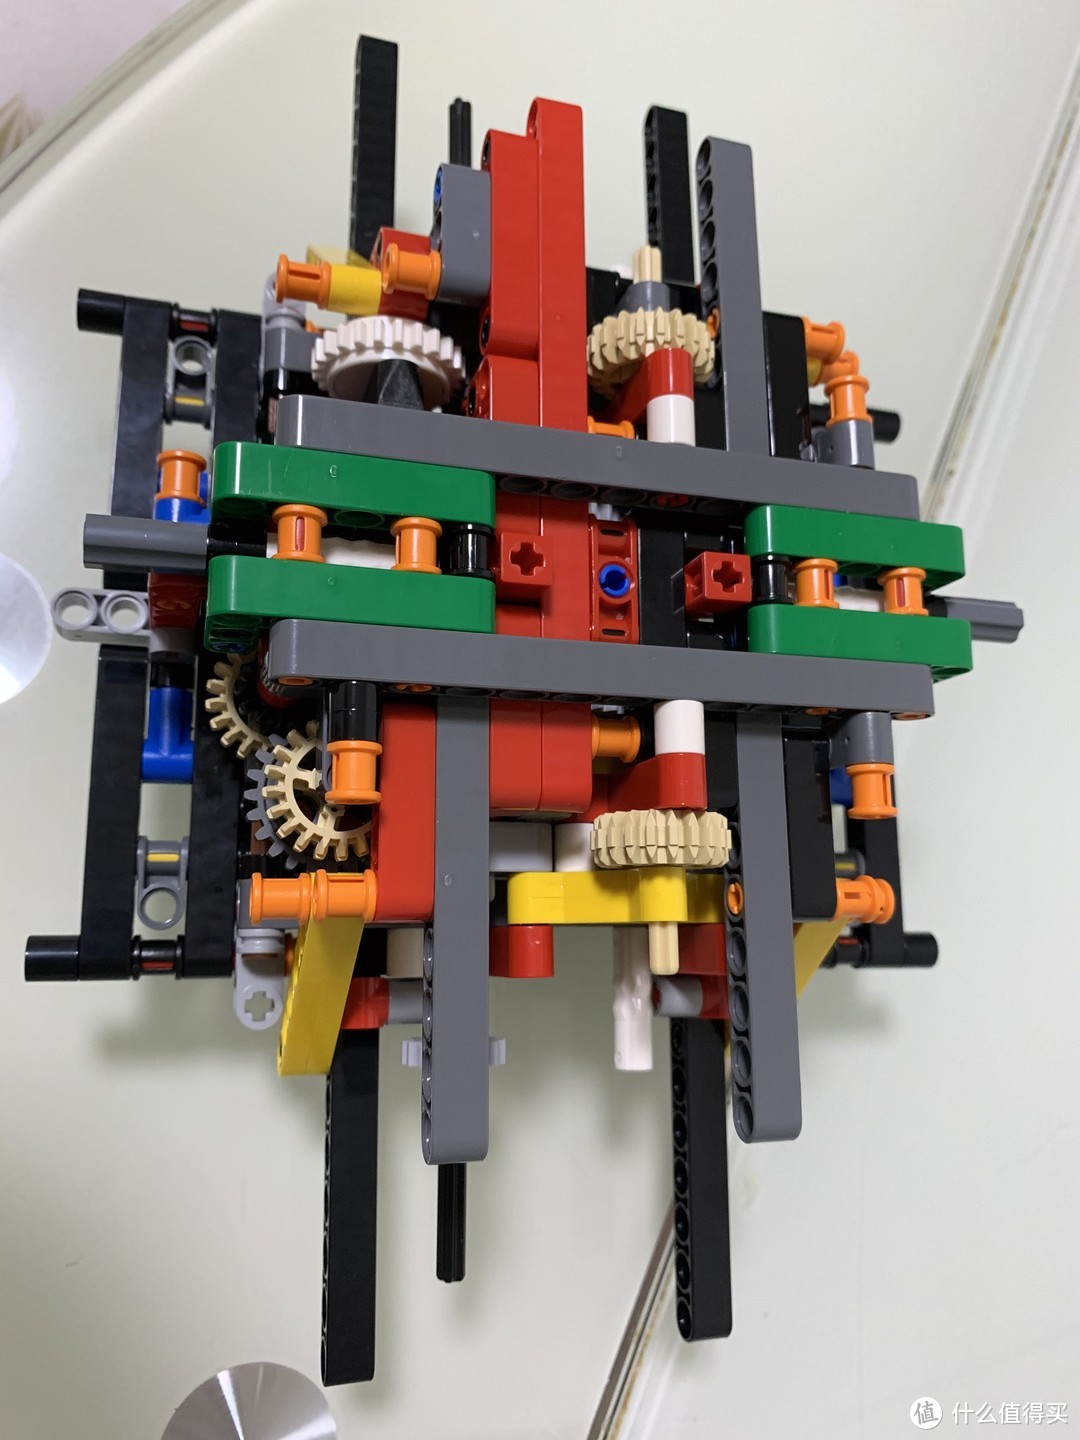 LEGO 2018科技旗舰42082开箱 + B模式 移动式打桩机